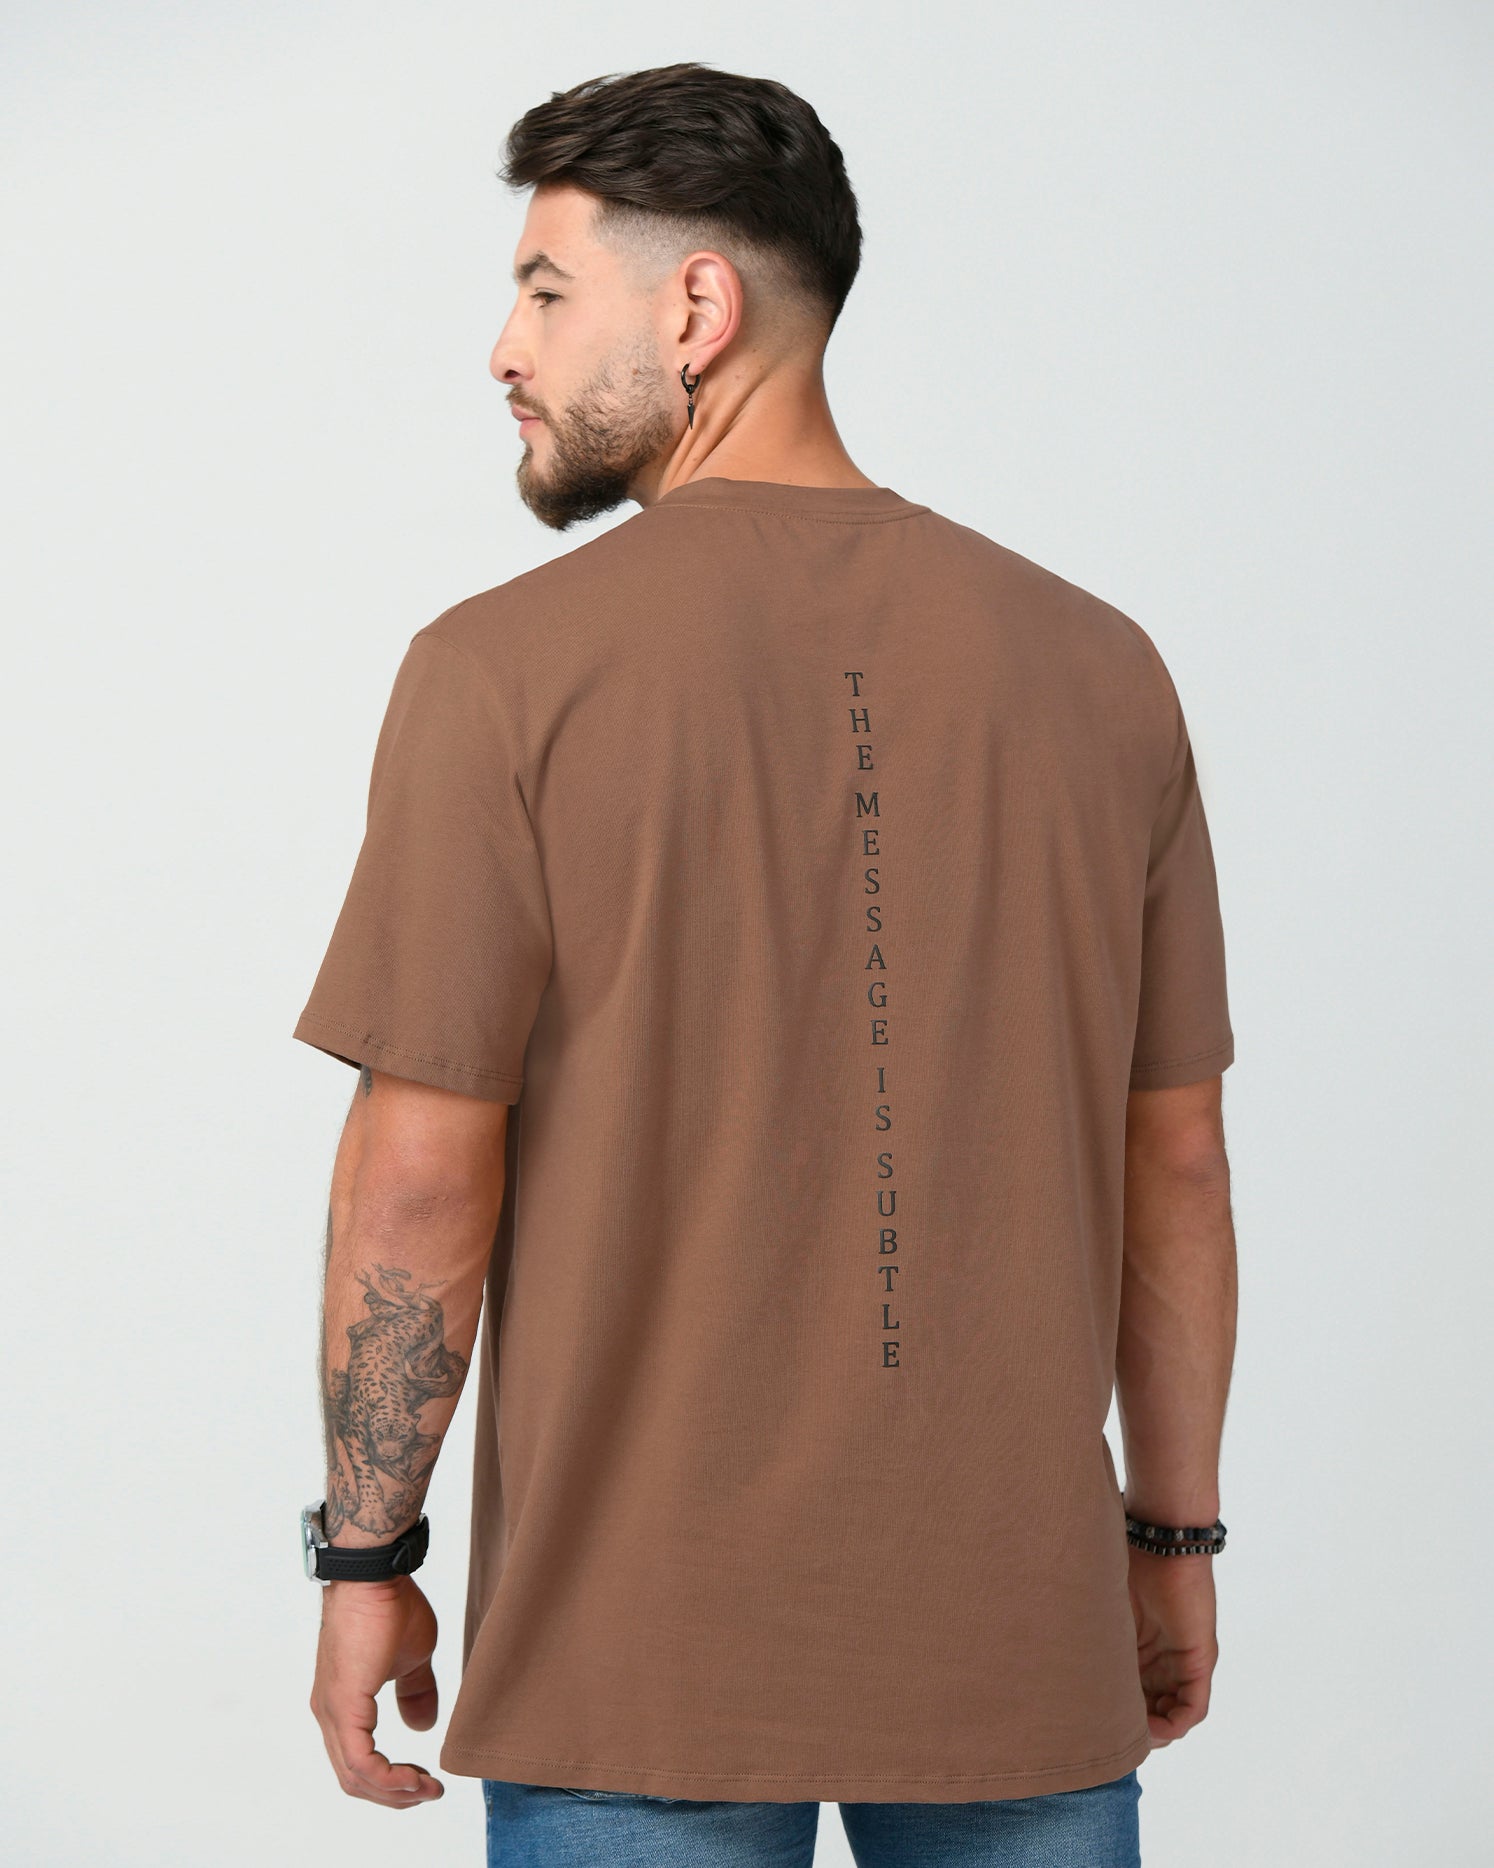 Camiseta clásica regular color Mocca. Confeccionada en 97% Algodón y 3% Elastano, cuello redondo.  El modelo mide 1,75 mt y viste una talla S.